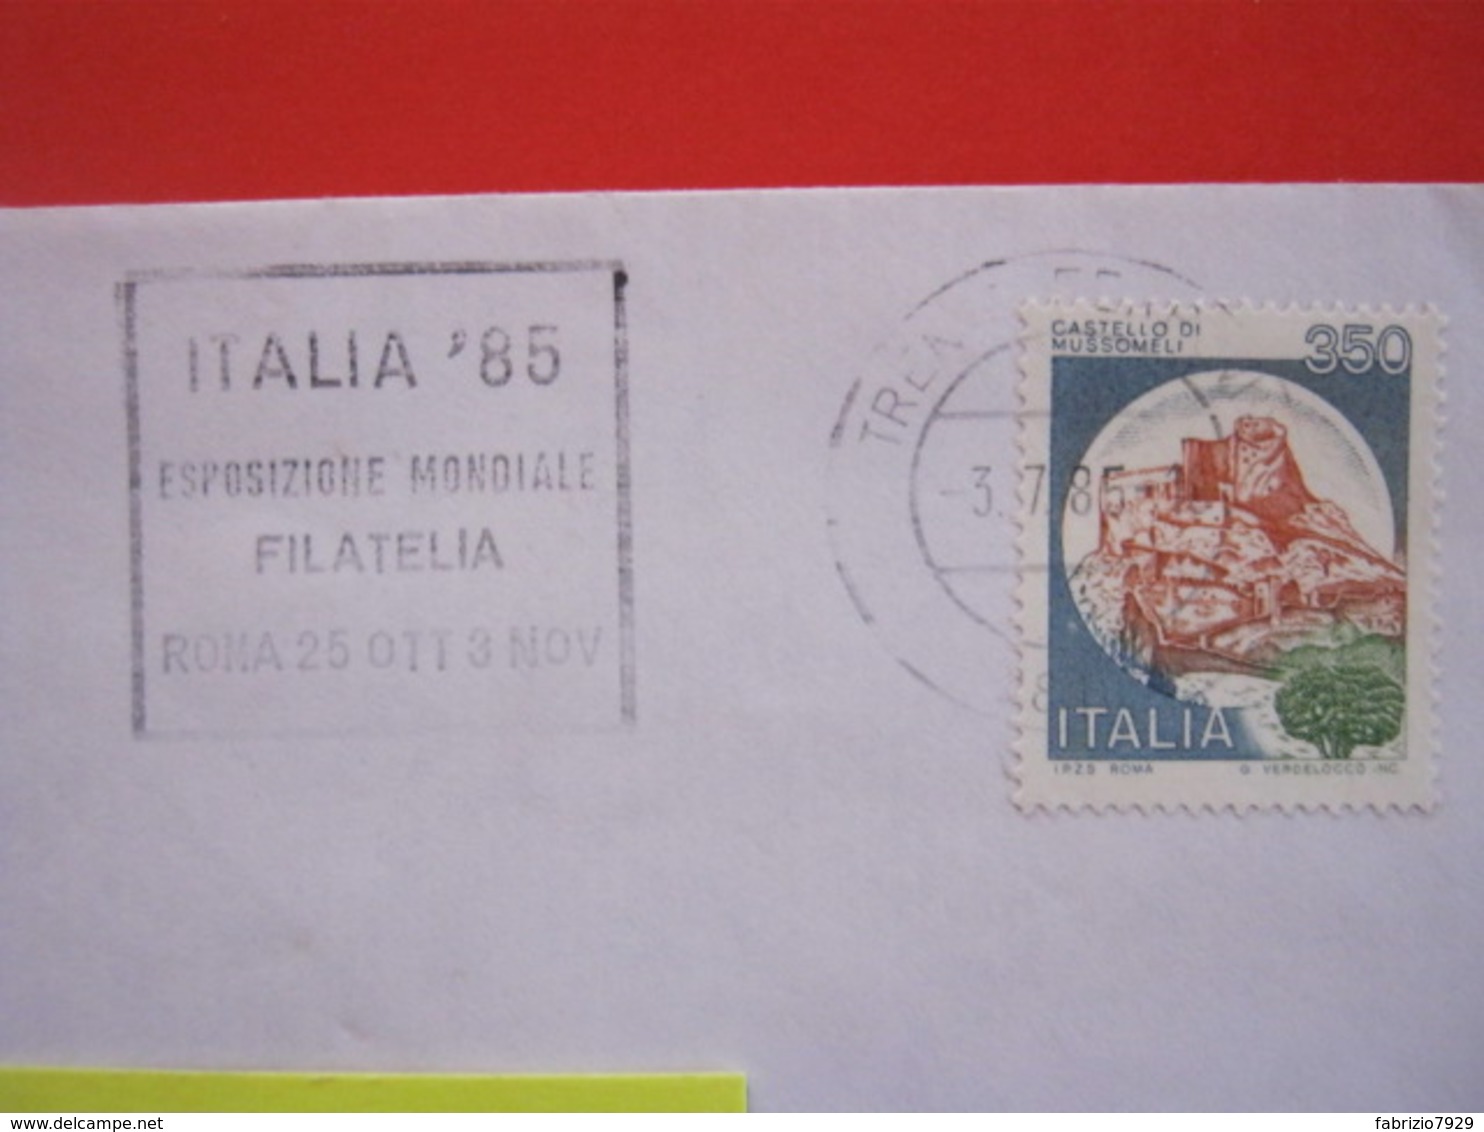 T1 ITALIA TARGHETTA - 1985 TRENTO ITALIA '85 ESPOSIZIONE MONDIALE FILATELIA PHIL - DATA CON GIORNI - Esposizioni Filateliche